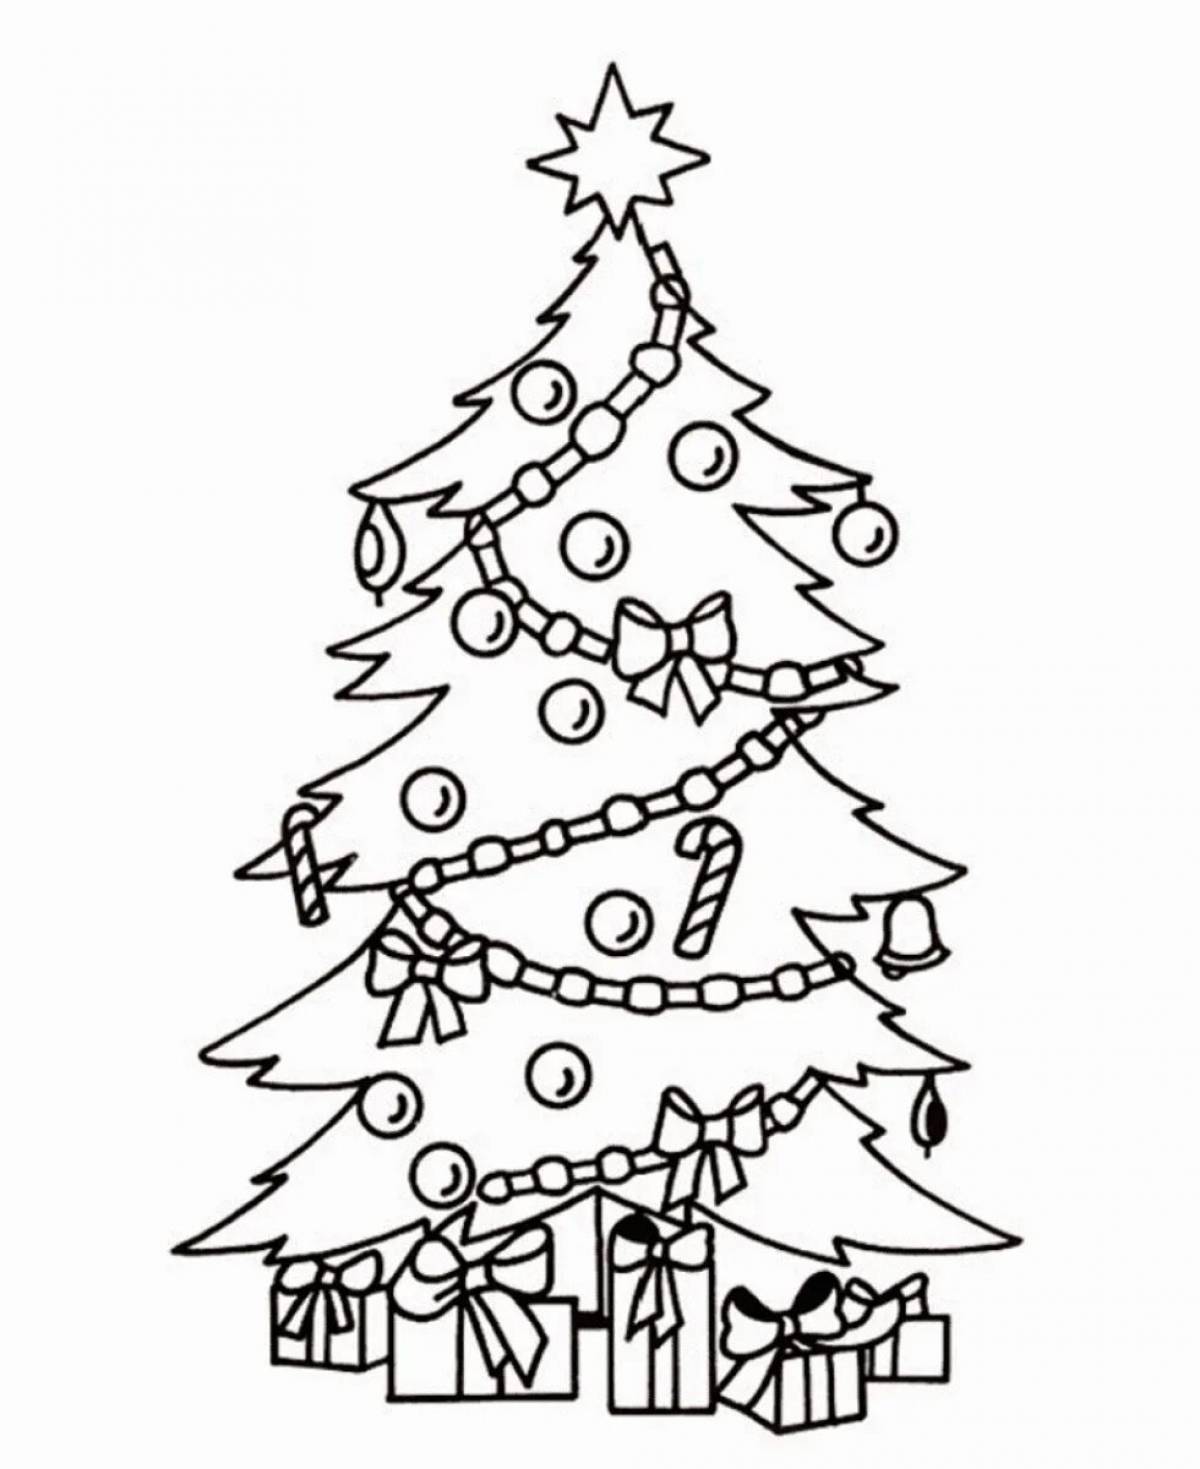 Christmas tree drawing for kids #1